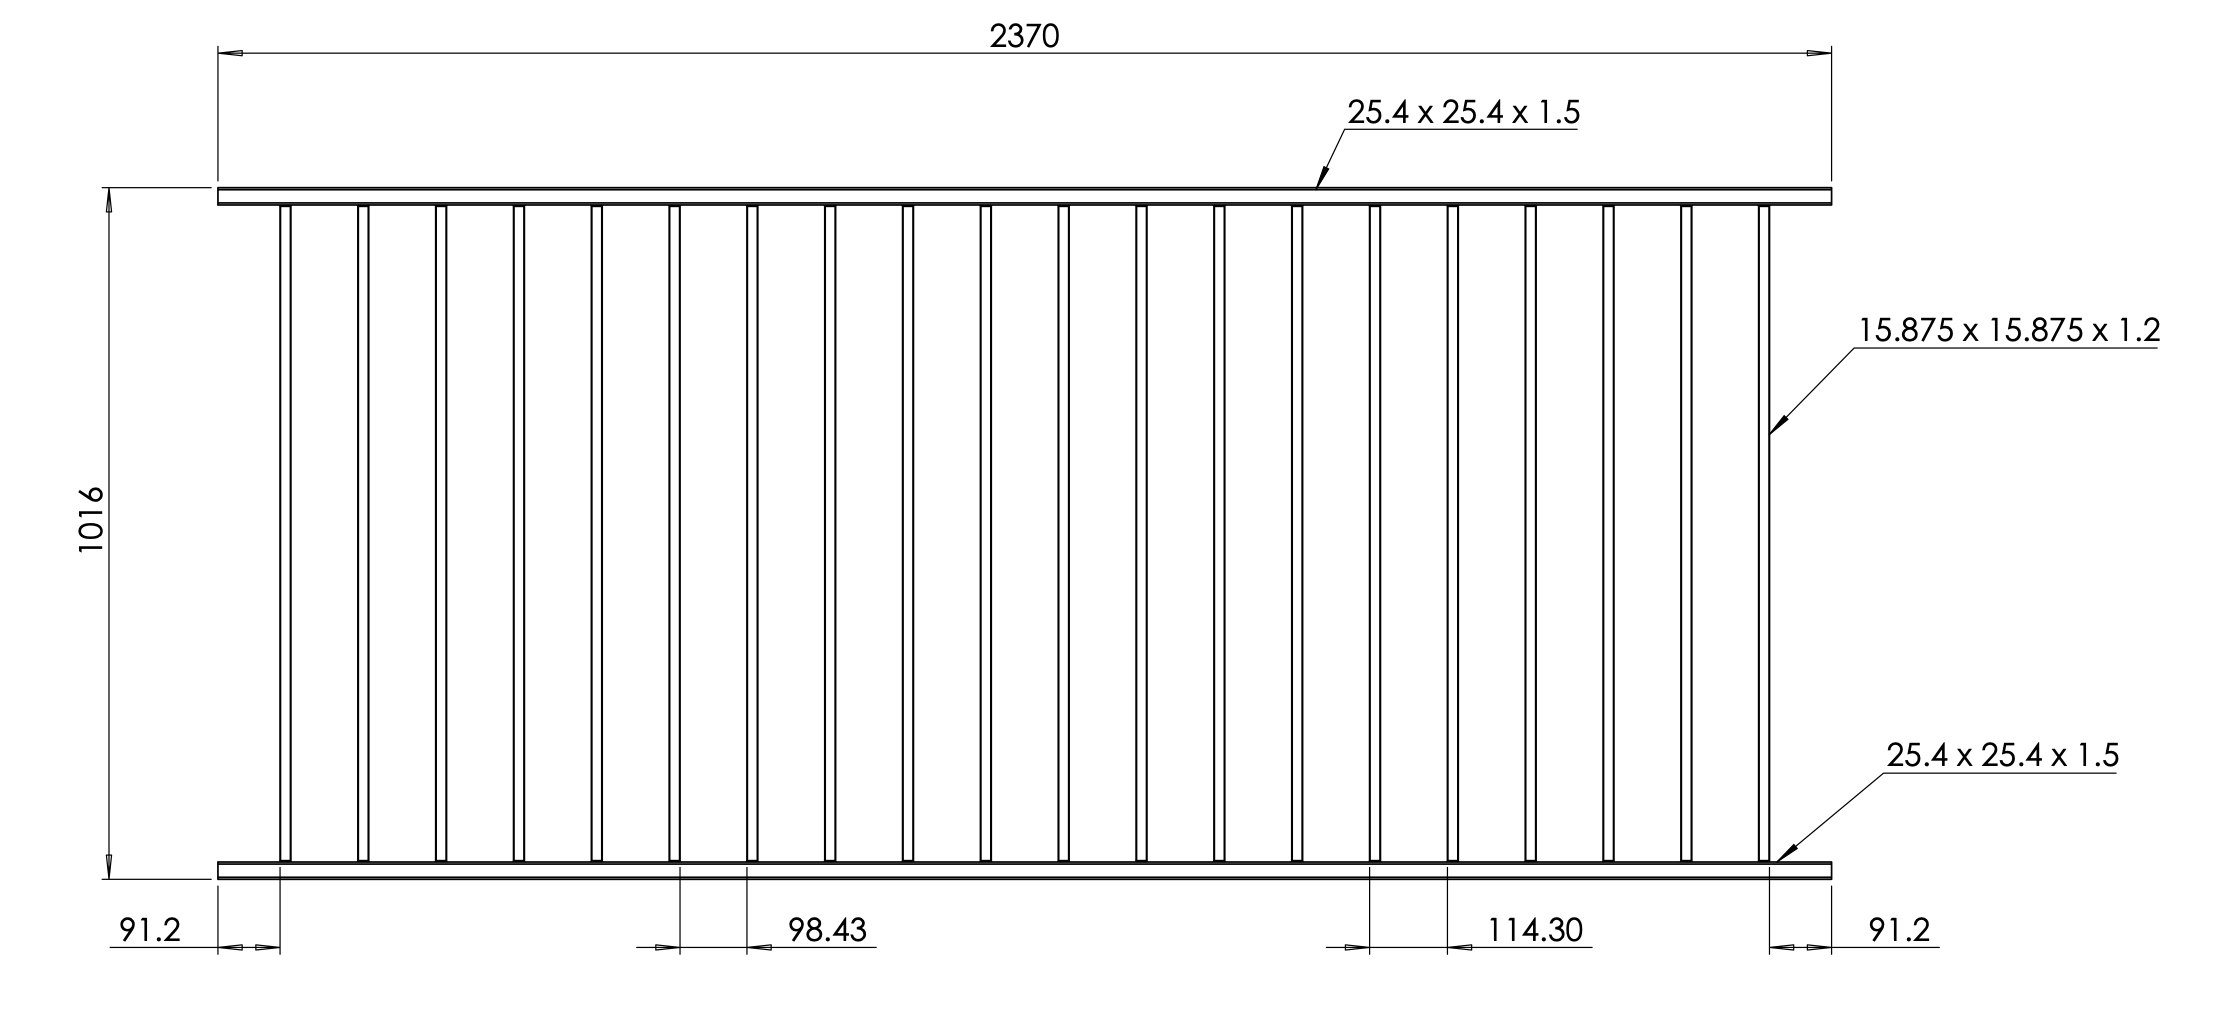 Panneau pour garde-corps simple en kit de 2387mm de long et 1016mm de haut. Galvanisé et peint en noir. Les barreaux sont des tubes 16x16x1,52mm. La main courante est un carré de 25x25x1,5mm.